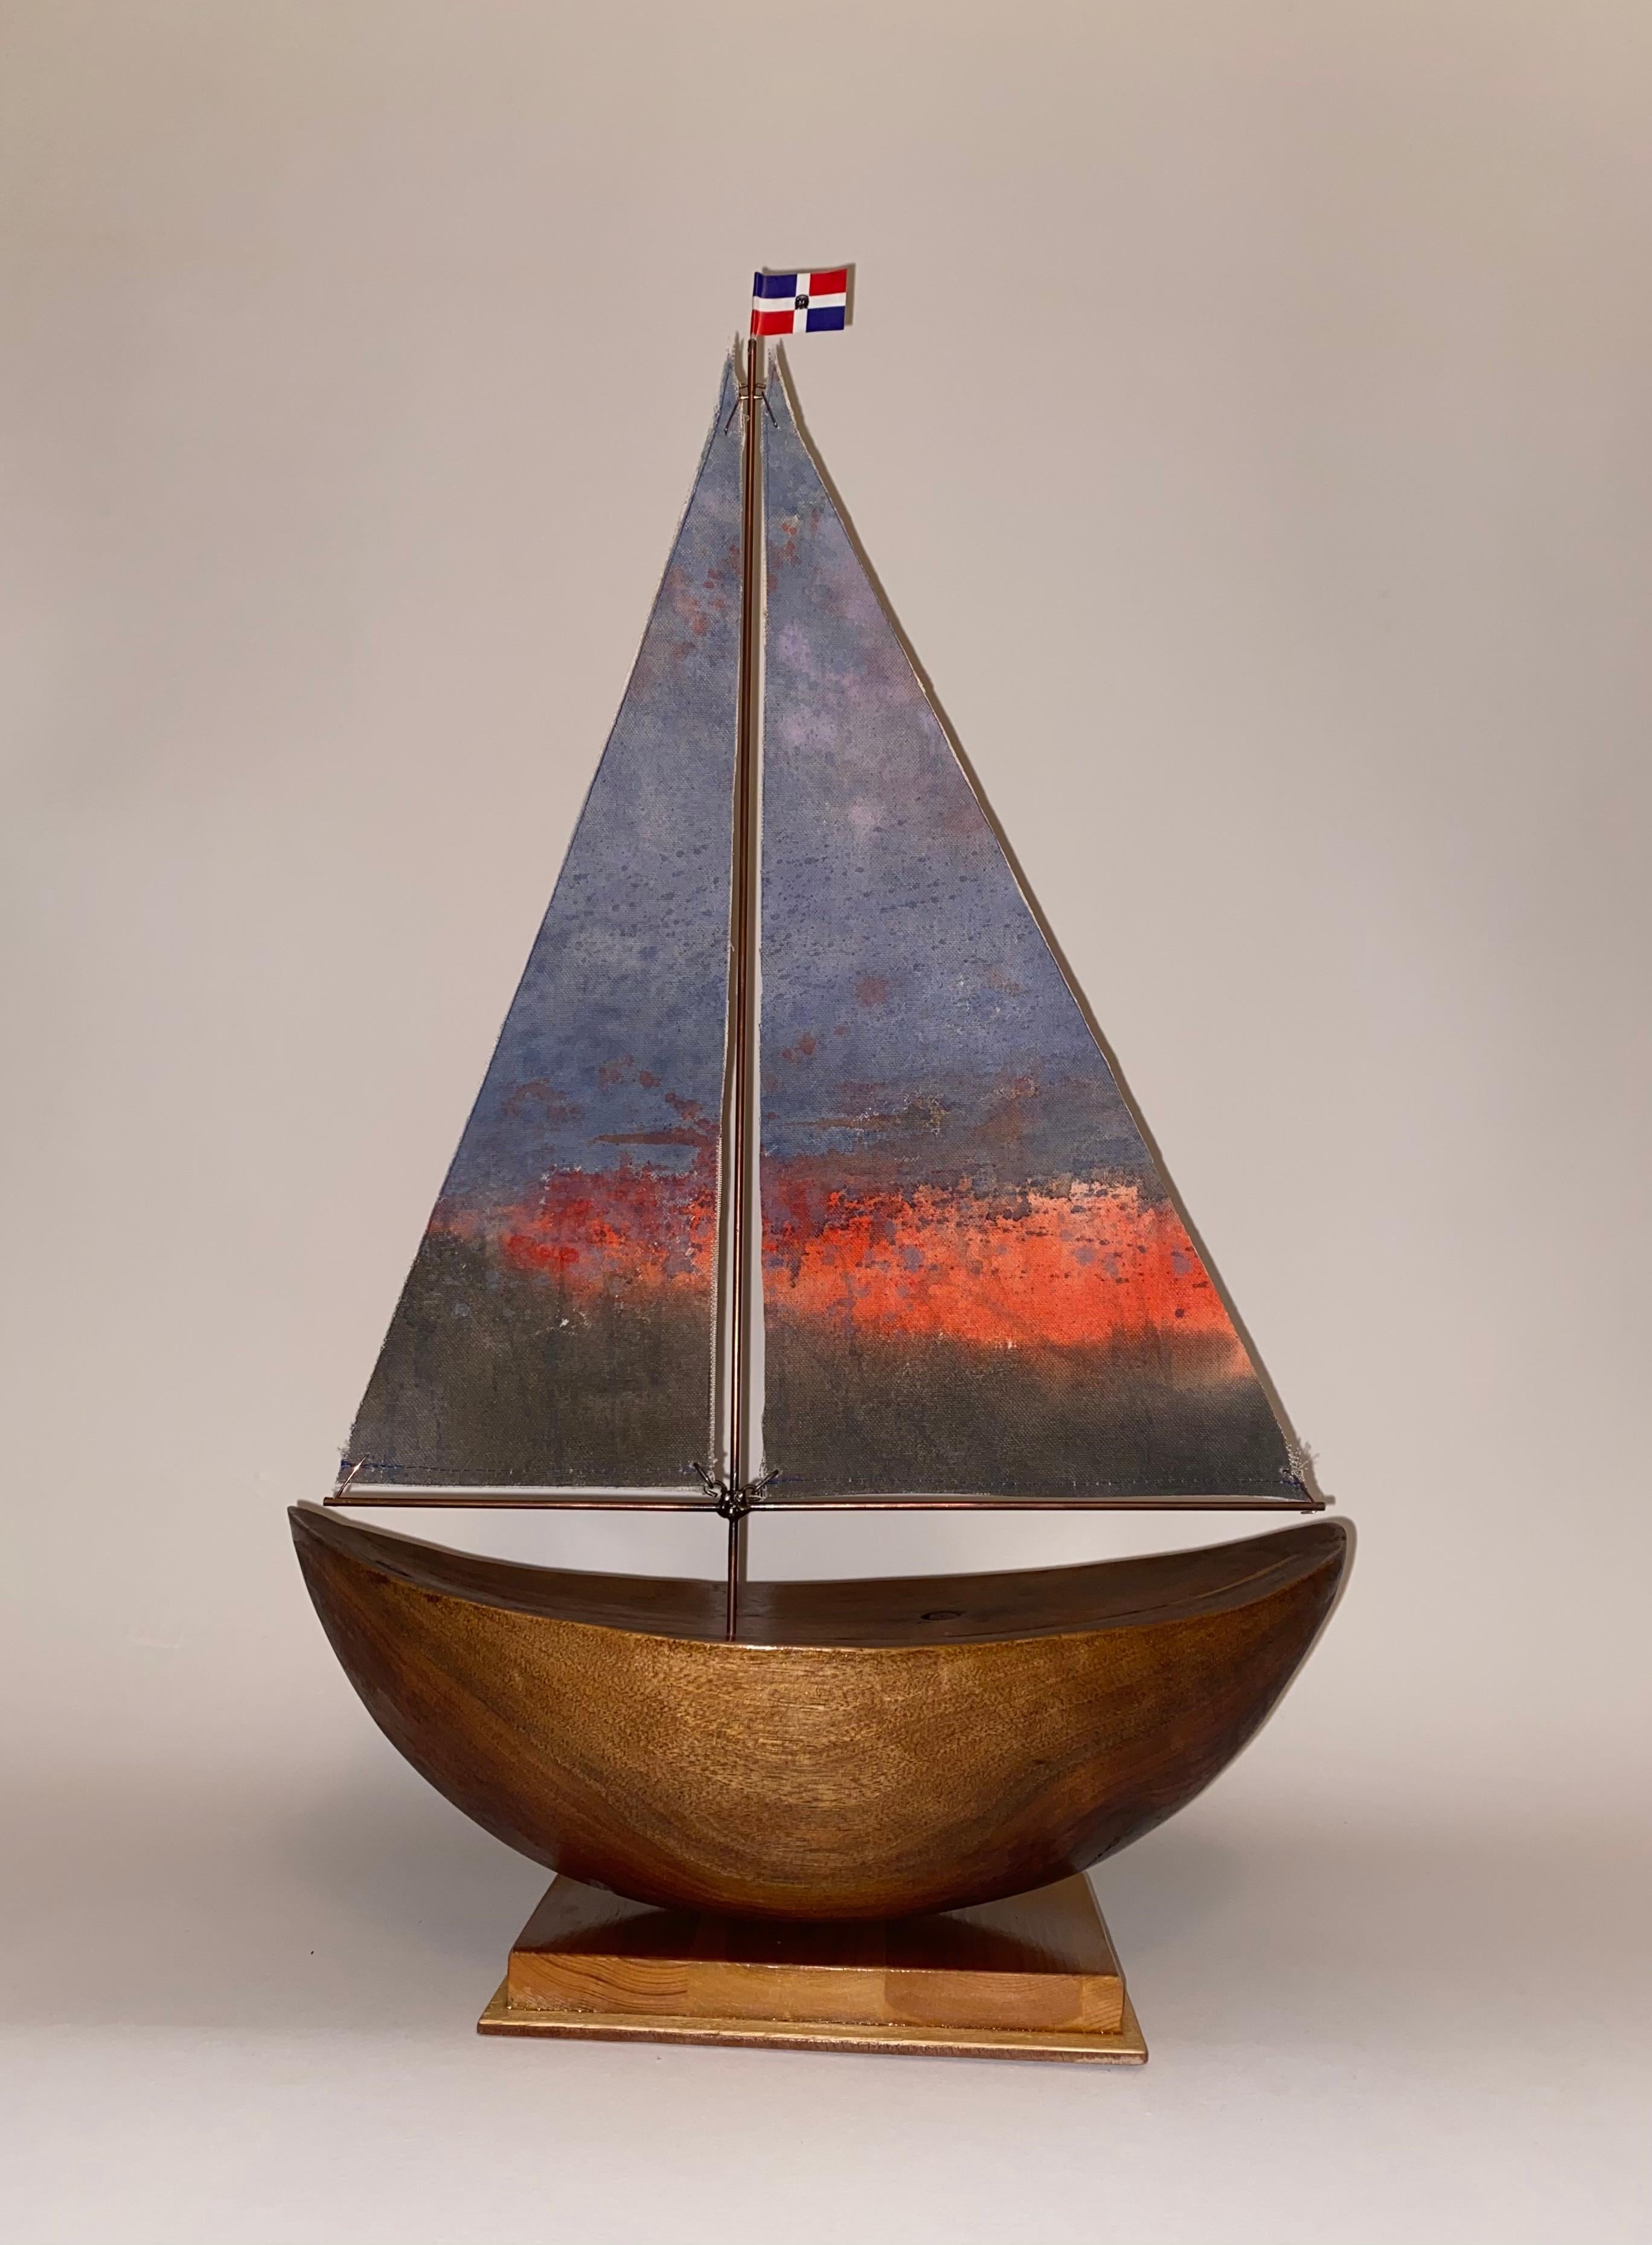 Pedro Villalta Still-Life Sculpture – Boat mit Sonnenuntergang-Segel